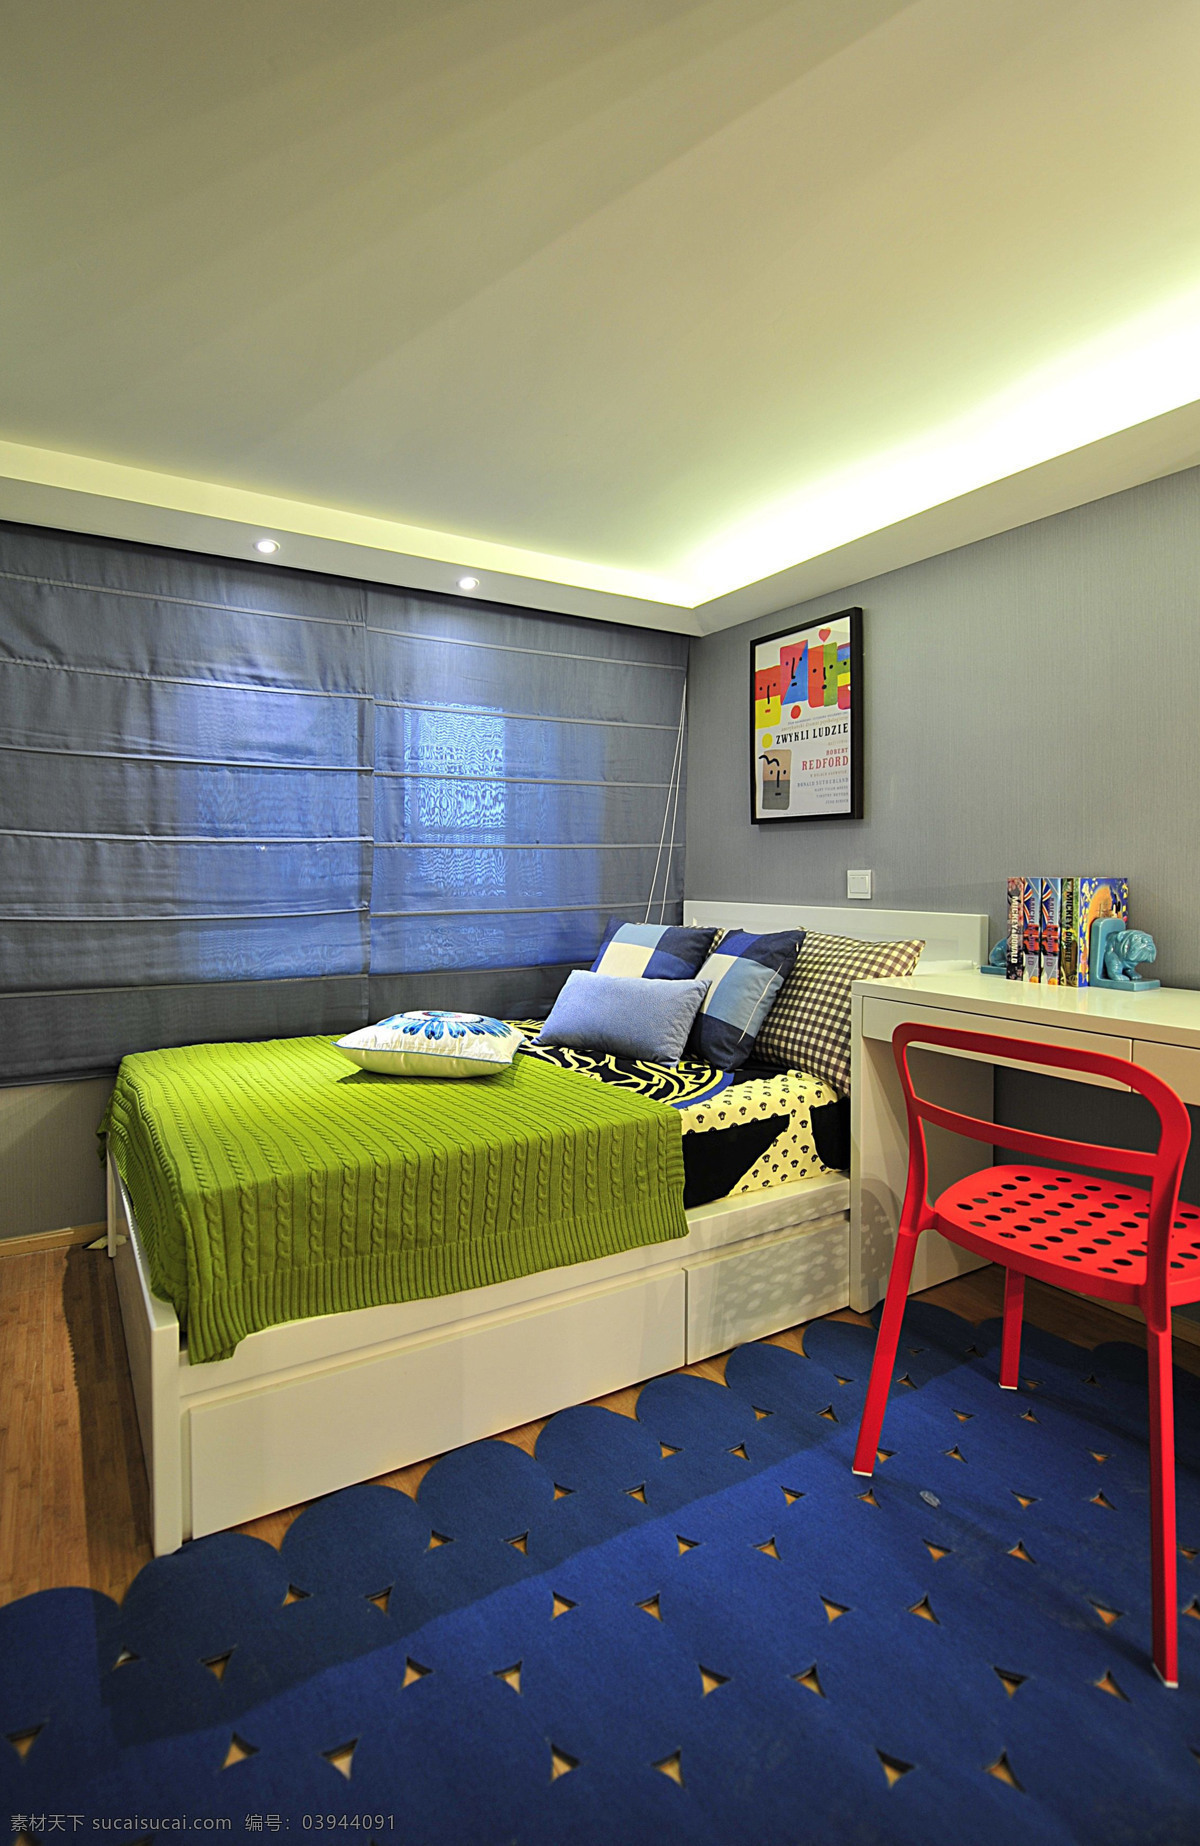 小 户型 儿童 卧室 设计图 3d模型素材 装修模型 室内设计 装修 室内 家具 装修设计 蓝色地毯 床